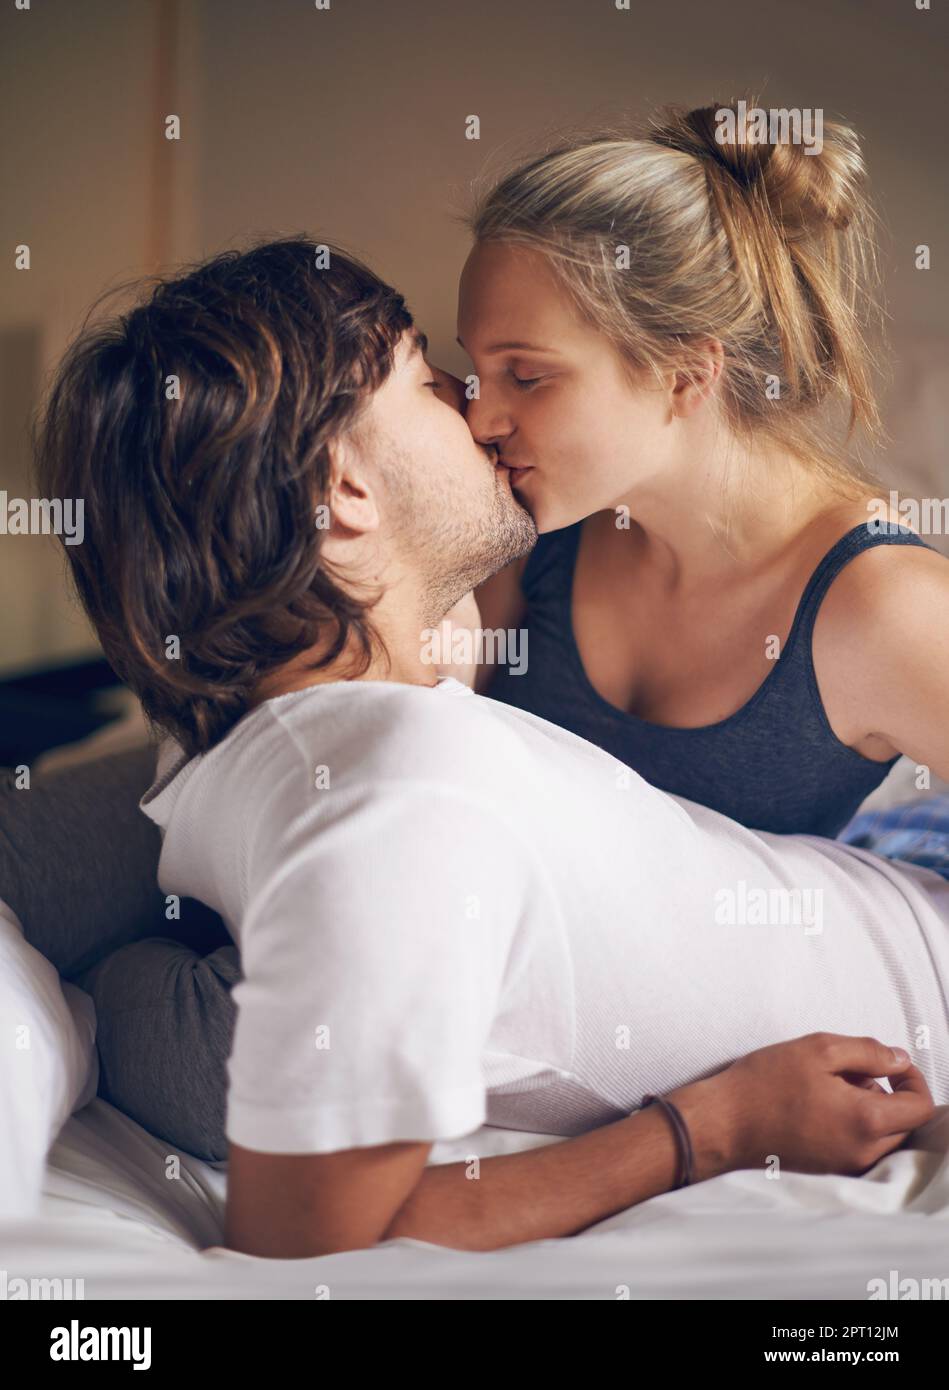 Aufwachen mit einem Kuss. Ein liebevolles junges Paar küsst sich im Bett Stockfoto